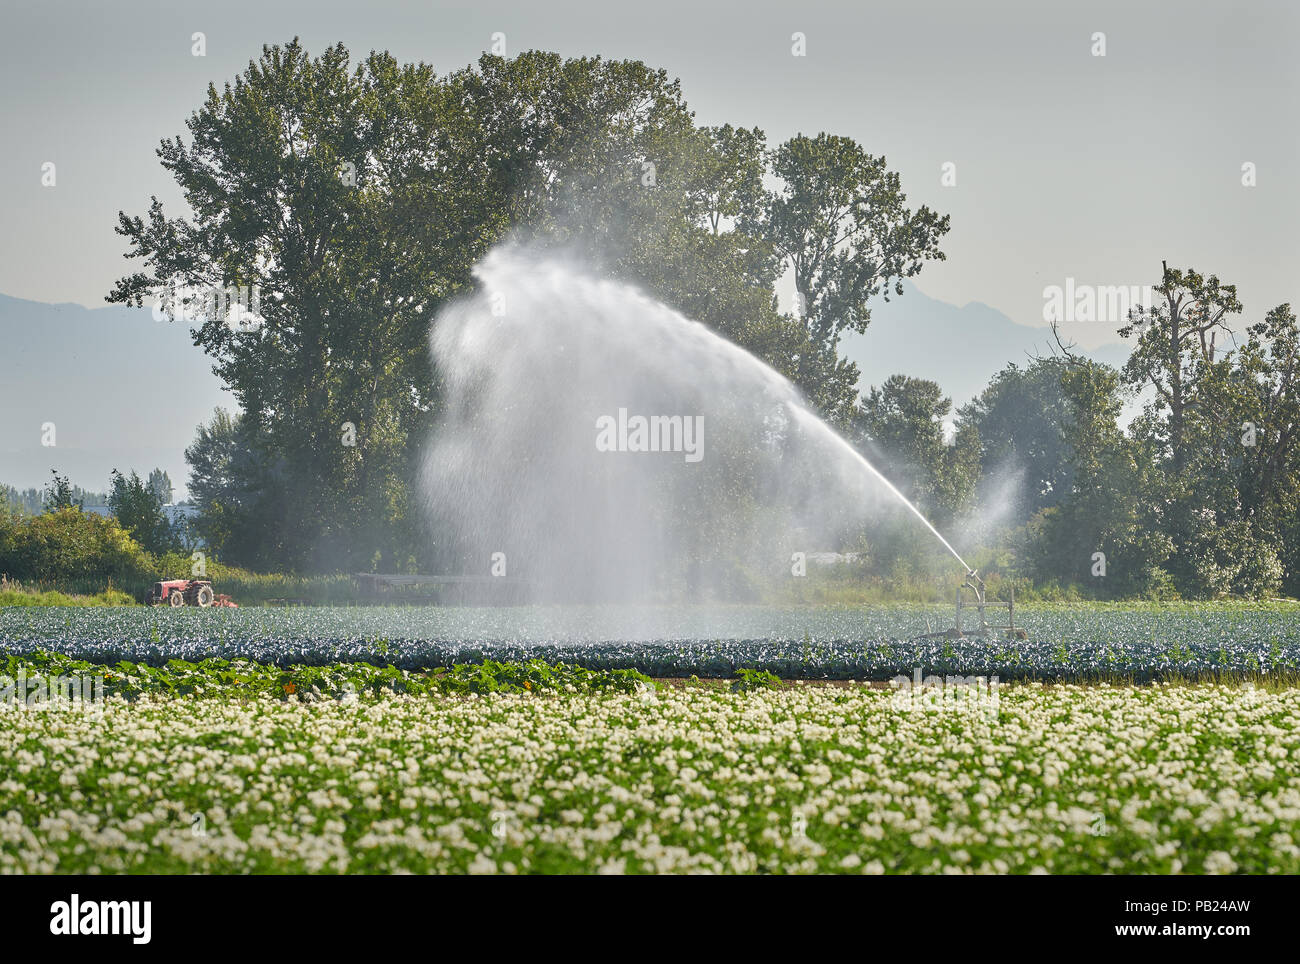 Landwirtschaft Bewässerung Sprinkler. Eine Sprinkleranlage bewässert ein Gemüse. Stockfoto